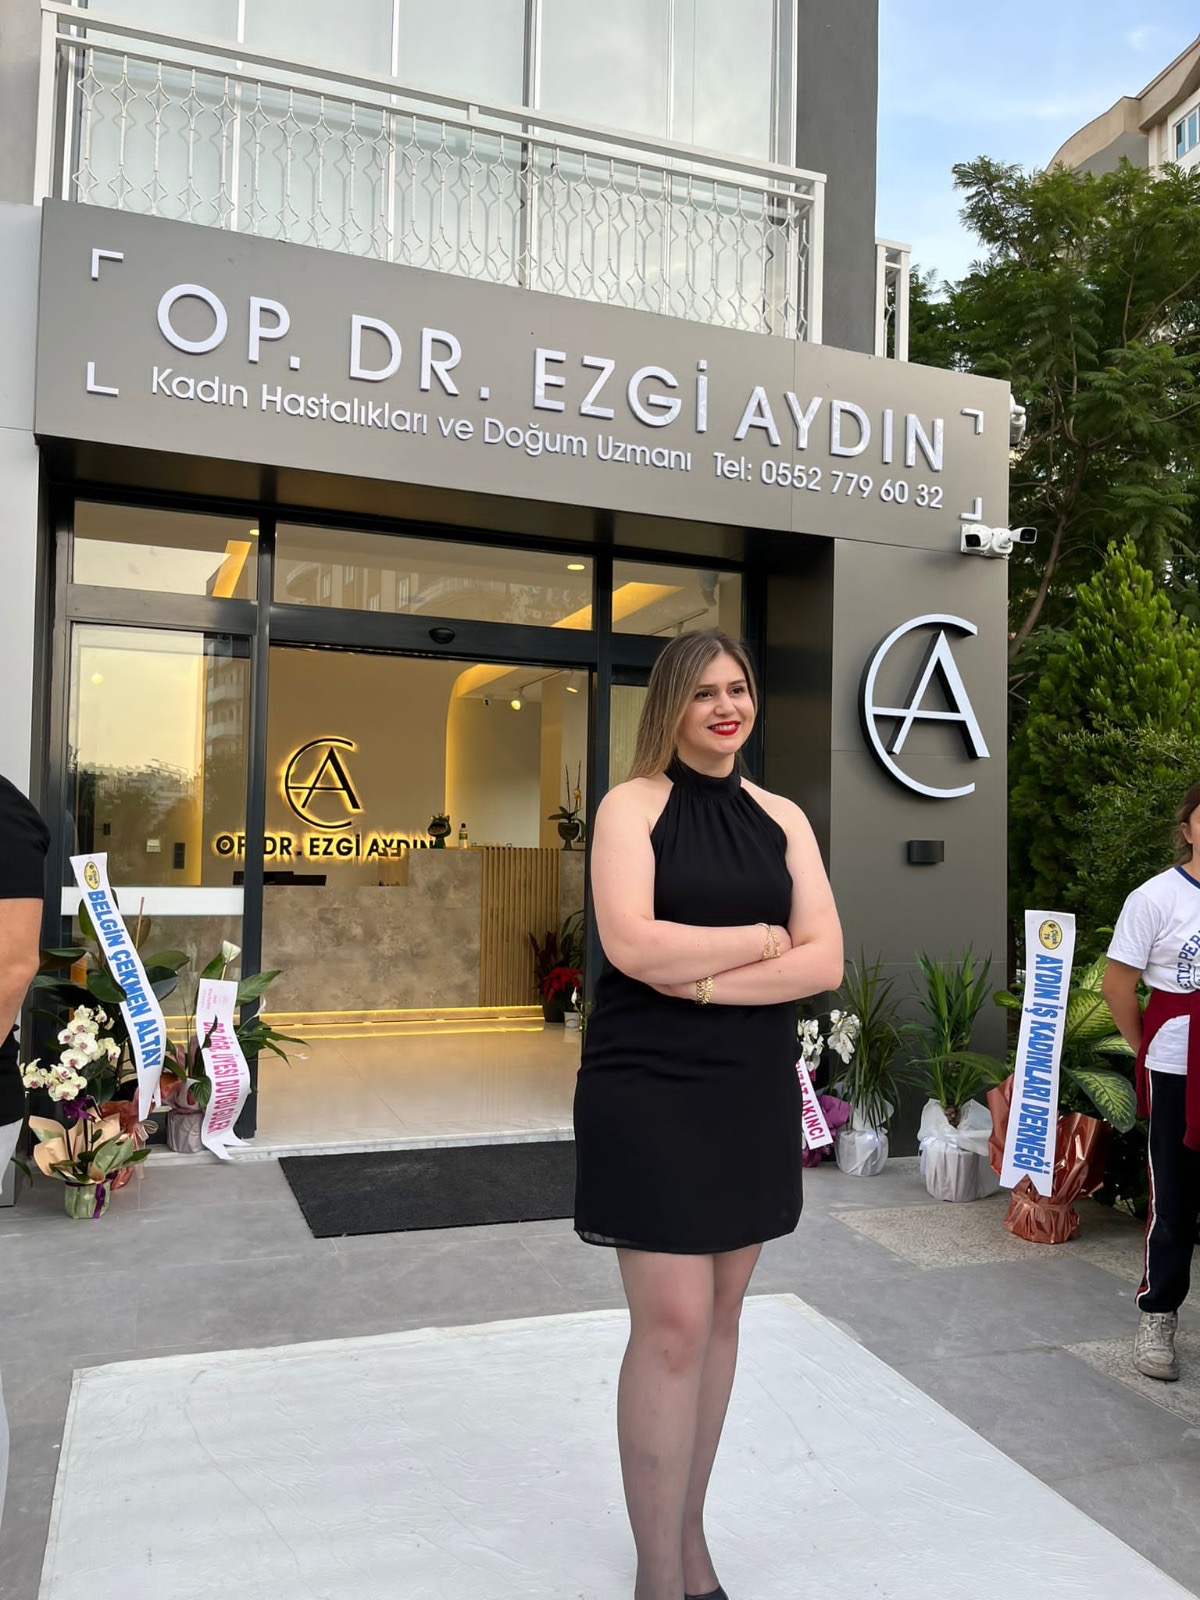 Kadın Hastalıkları ve Doğum Uzmanı Operatör Dr. Ezgi Aydın, yeni kliniğinin açılışını gerçekleştirdi